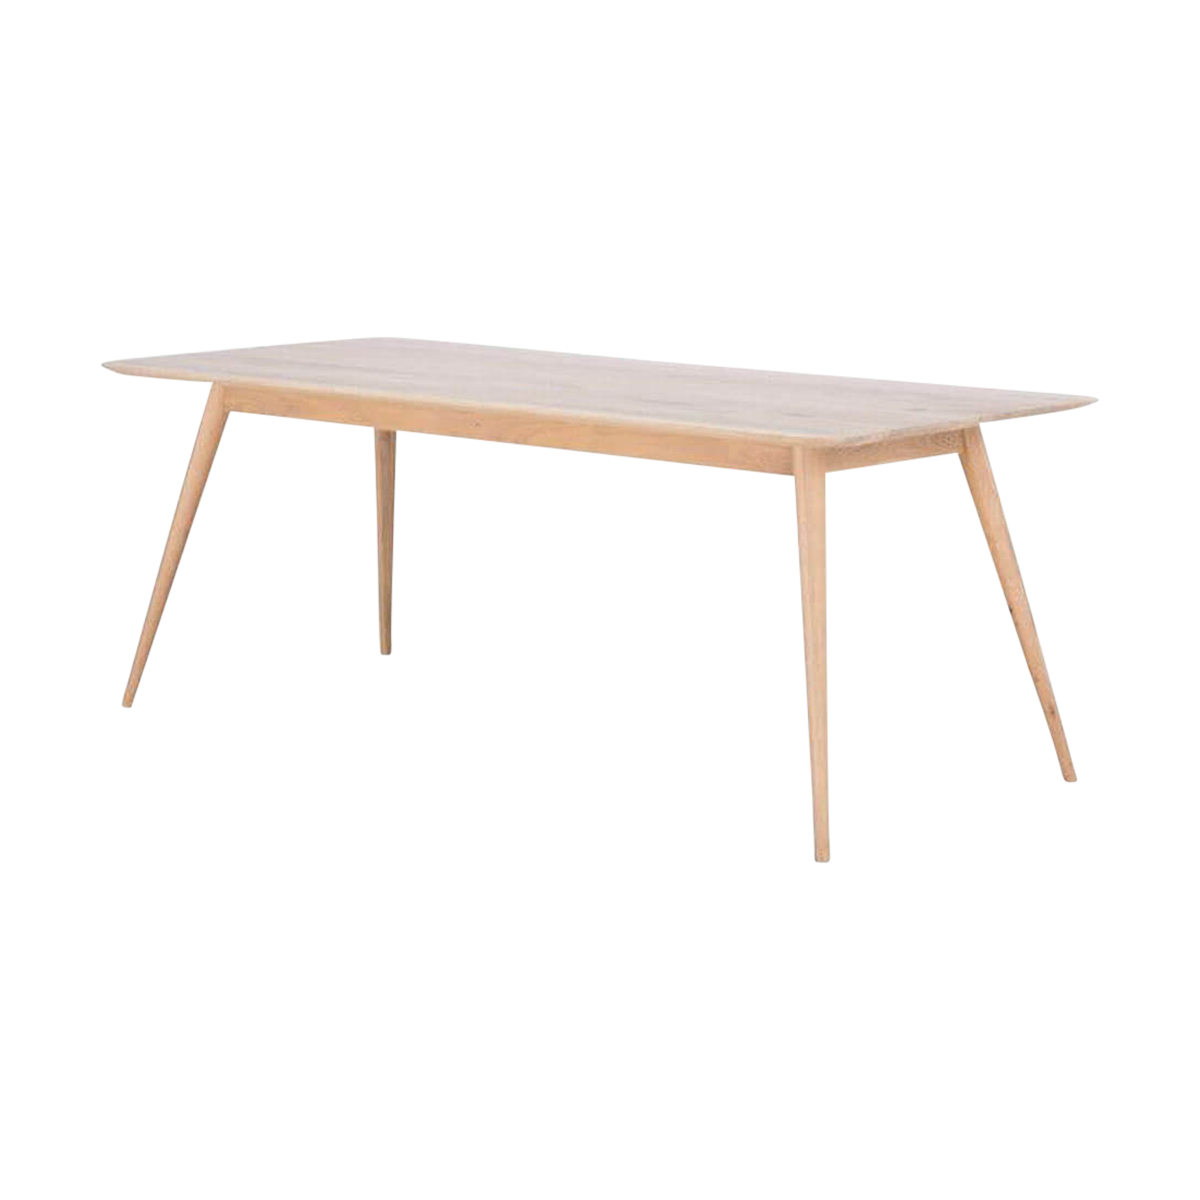 Stafa table houten eettafel whitewash - 180 x 90 cm